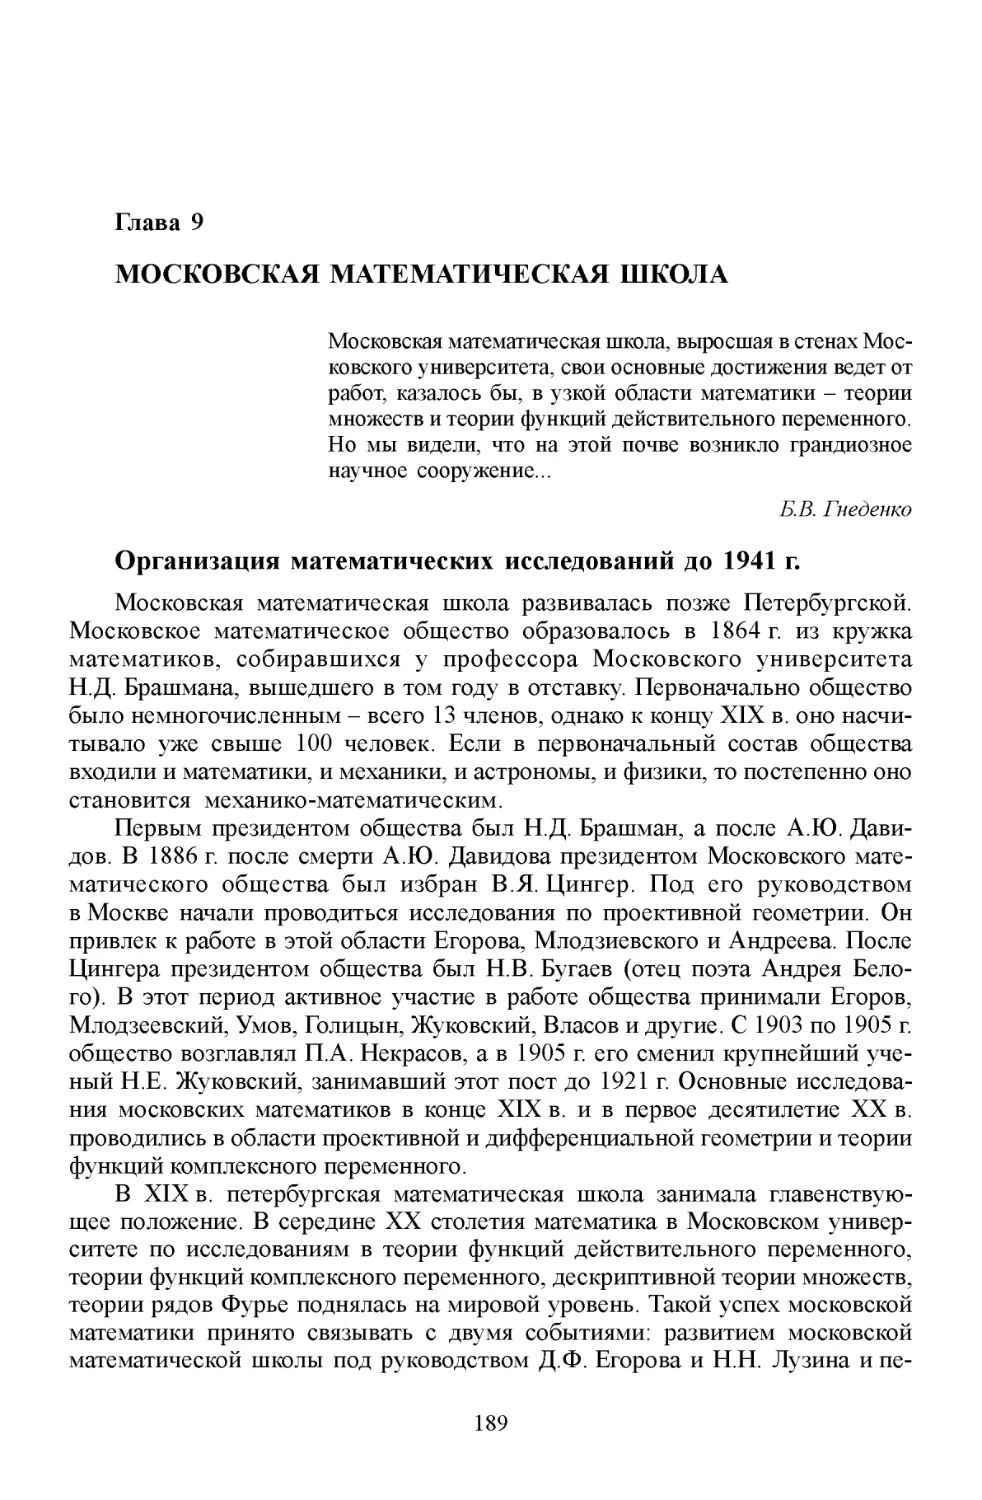 Глава 9. Московская математическая школа
Организация математических исследований до 1941г.